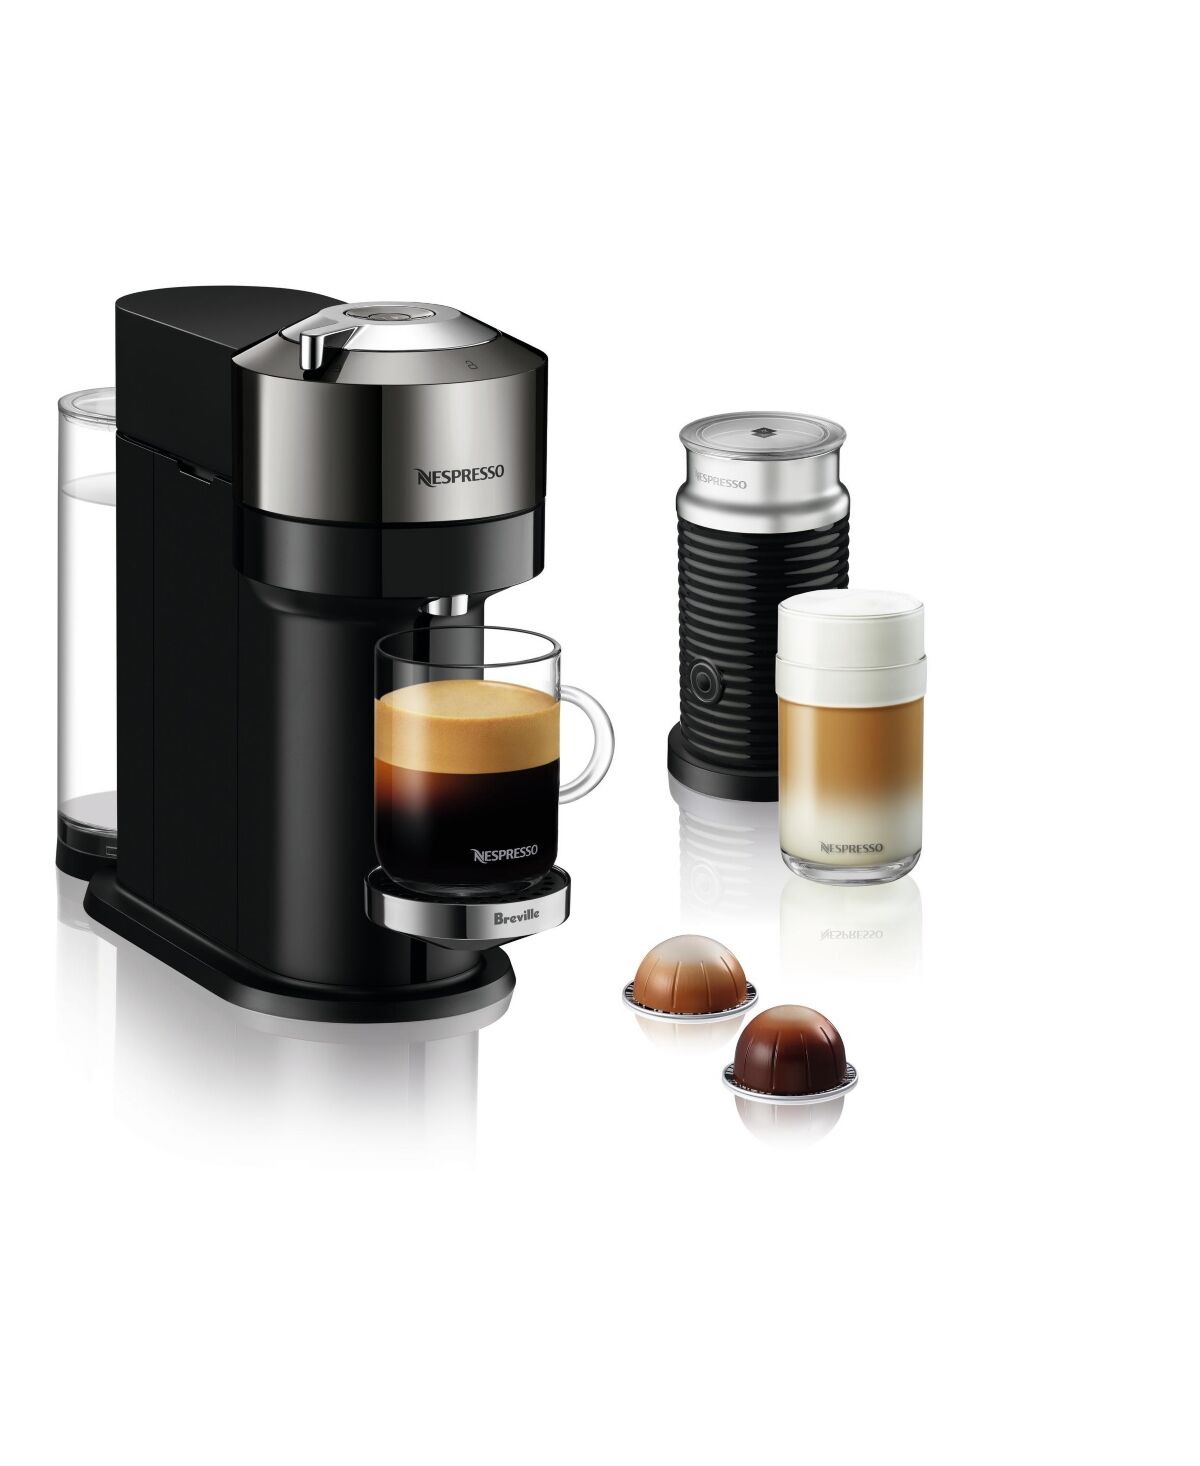 Nespresso Vertuo Next Deluxe Coffee and Espresso Machine by Breville, Dark Chrome with Aeroccino Milk Frother - Dark Chrome